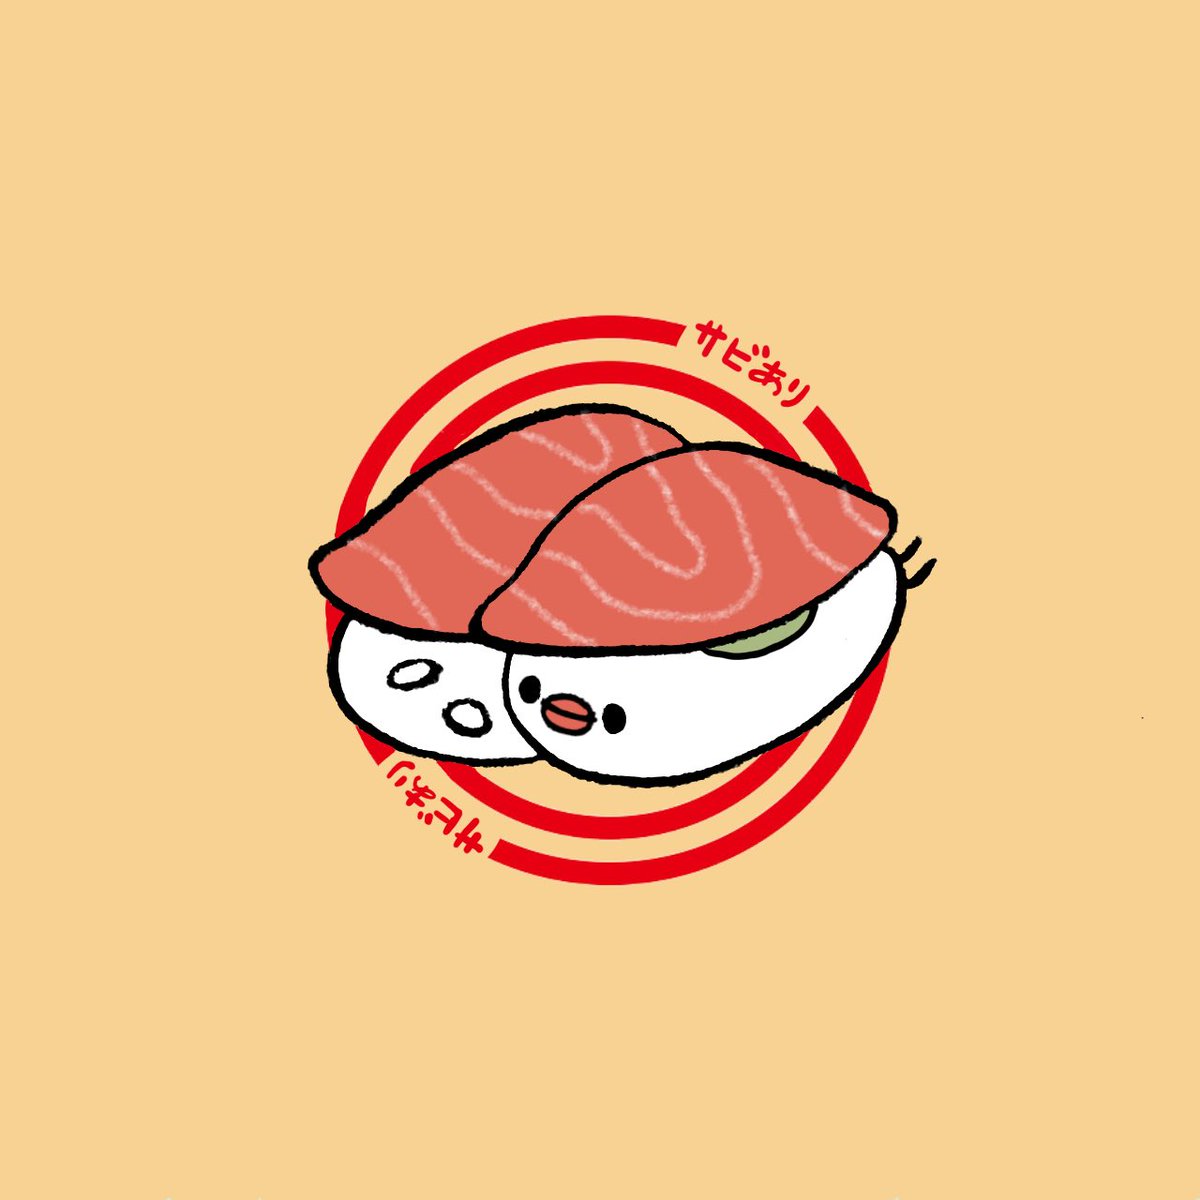 「回転寿司皿に乗ったお寿司ぶんちょ缶バッジを入稿しました出来上がりが楽しみ… 」|ゆひろのイラスト